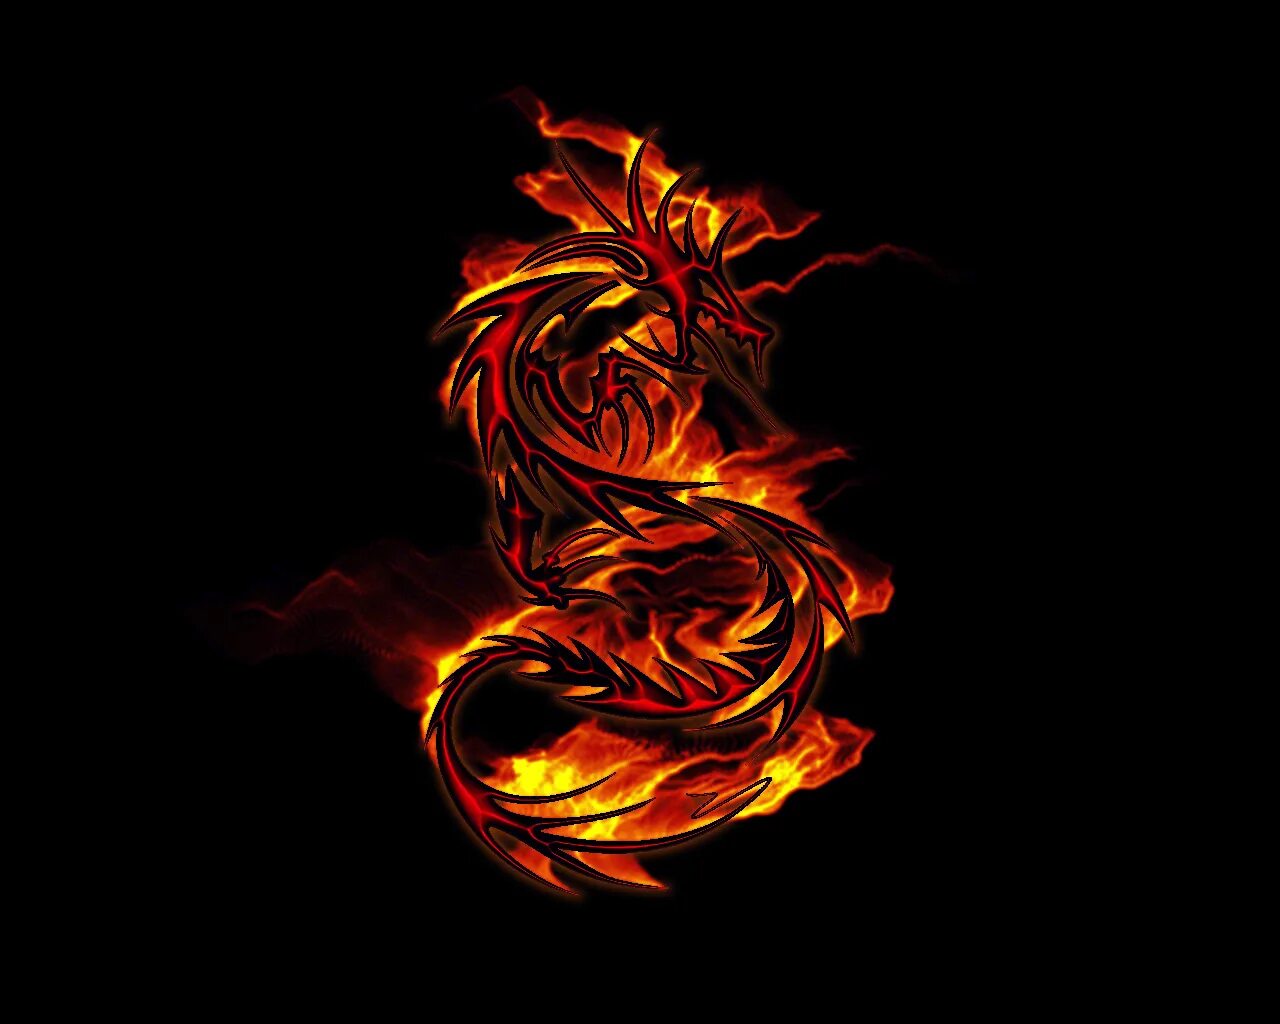 Дракон темного пламени. Огненный дракон. Дракон в огне. Пламя дракона. Дракон на черном фоне.